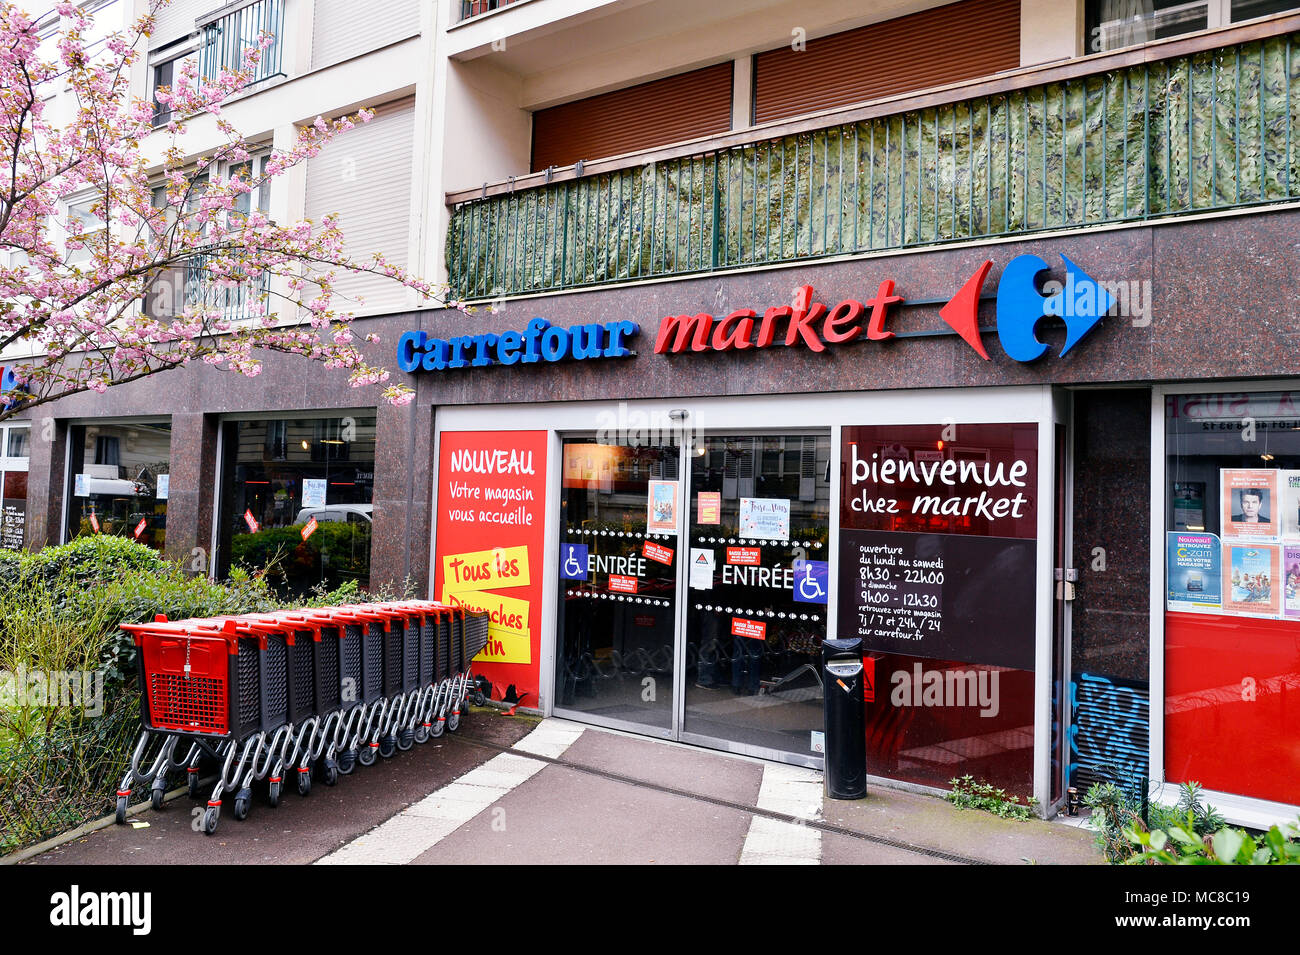 Carrefour market - Paris - France Stock Photo - Alamy